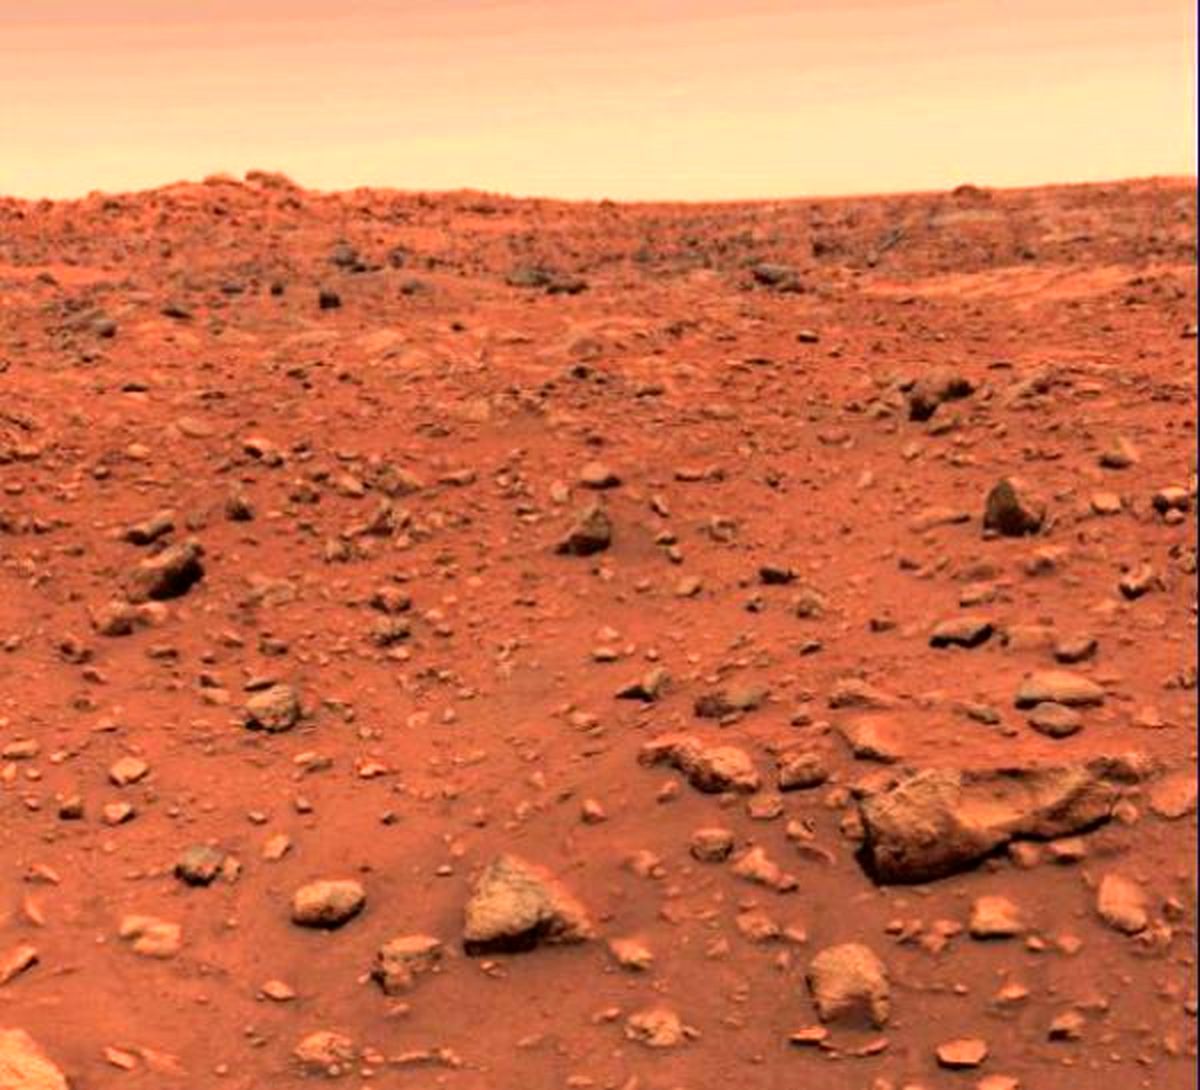 سطح مریخ شبیه به یک قاتل است!